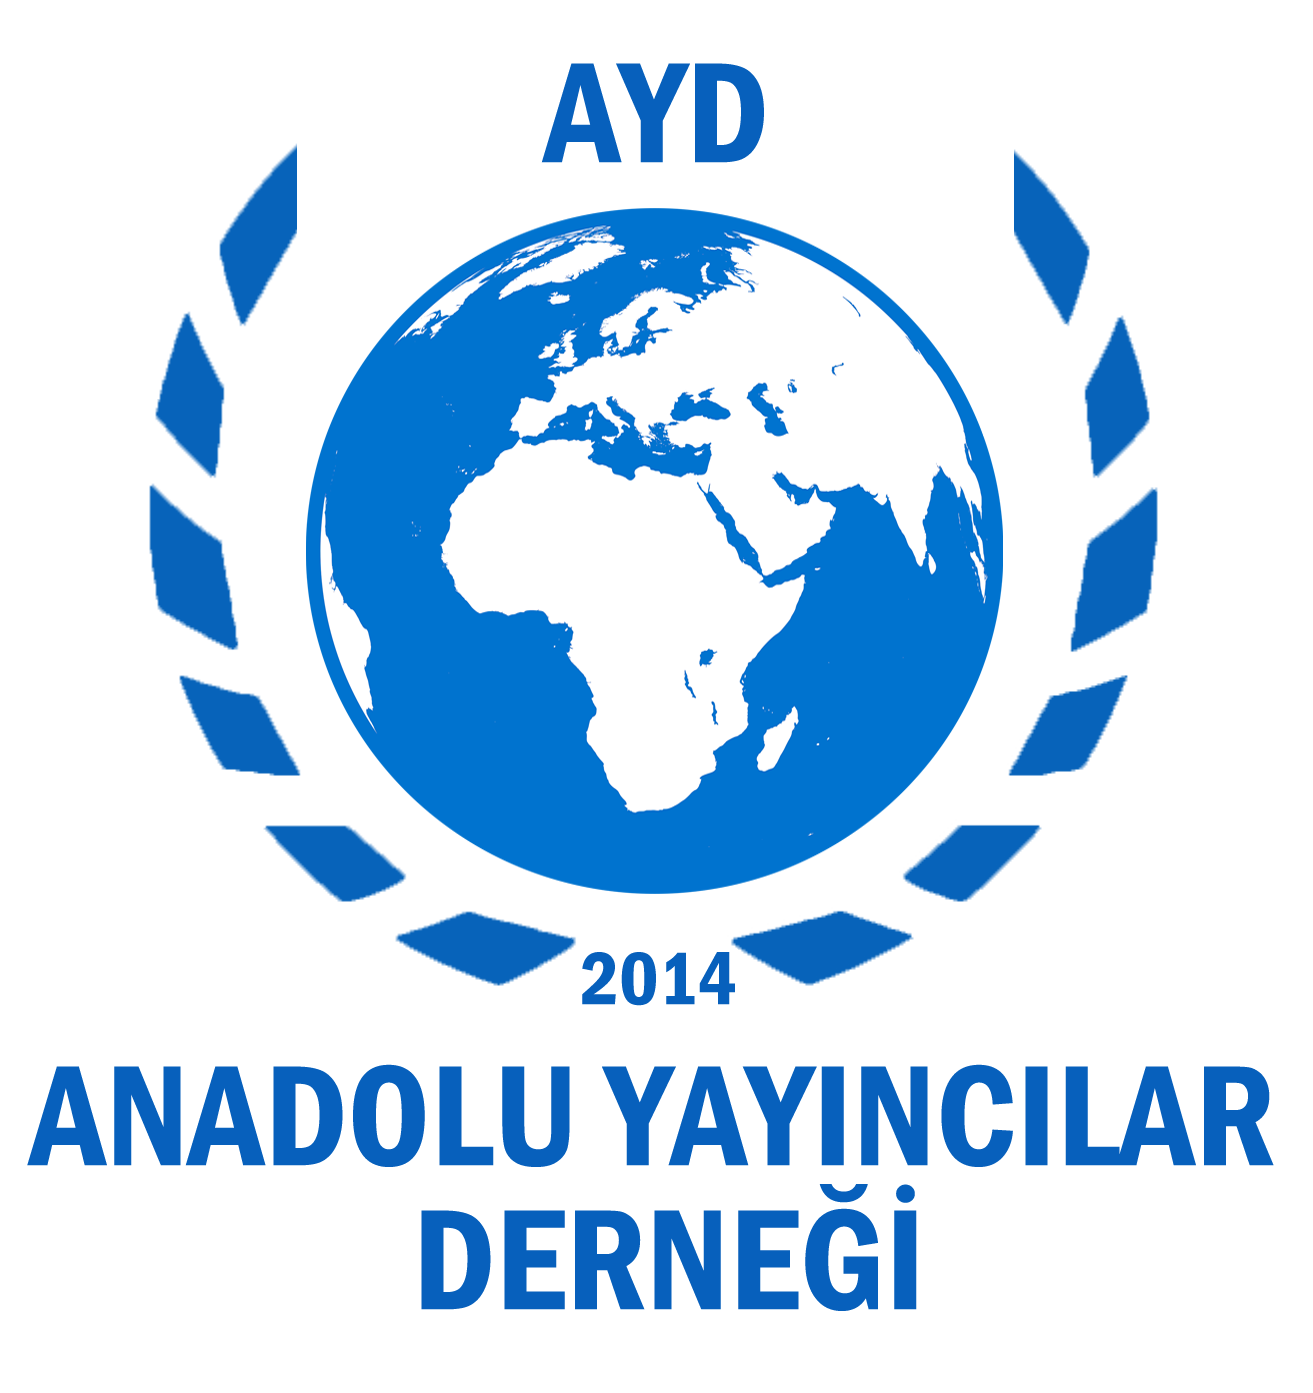 AYD “Basın Konseyi ve Gazeteciler cemiyetinin siyasal nefret dilini kınıyoruz.”